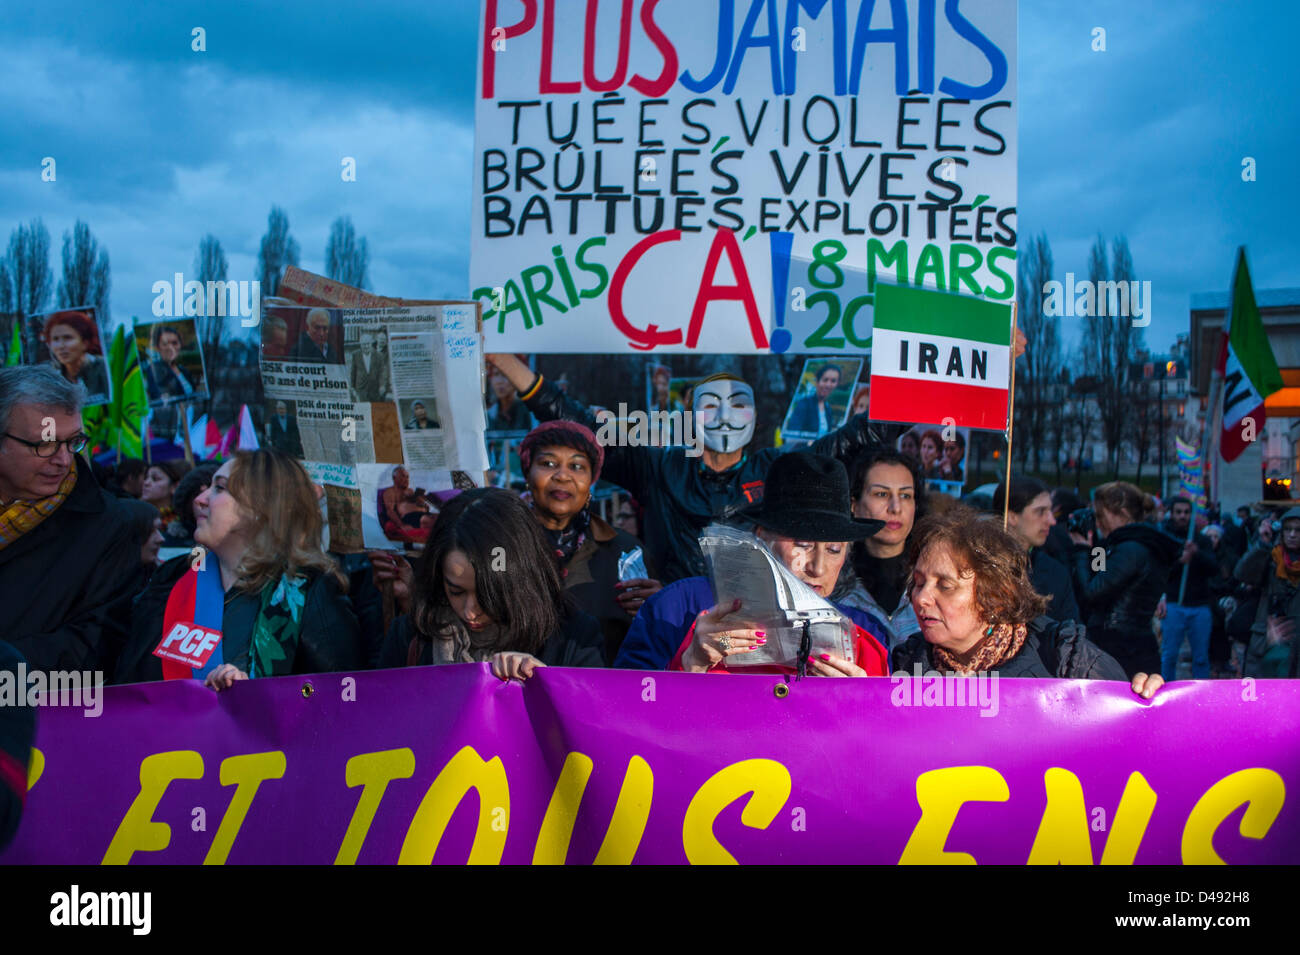 Paris, France. Le 8 mars, des groupes féministes français tiennent des panneaux de protestation, lors de la manifestation annuelle de la Journée internationale de la femme, manifestations, égalité des droits des femmes le 8 mars, slogans de justice sociale, défilent des femmes Banque D'Images